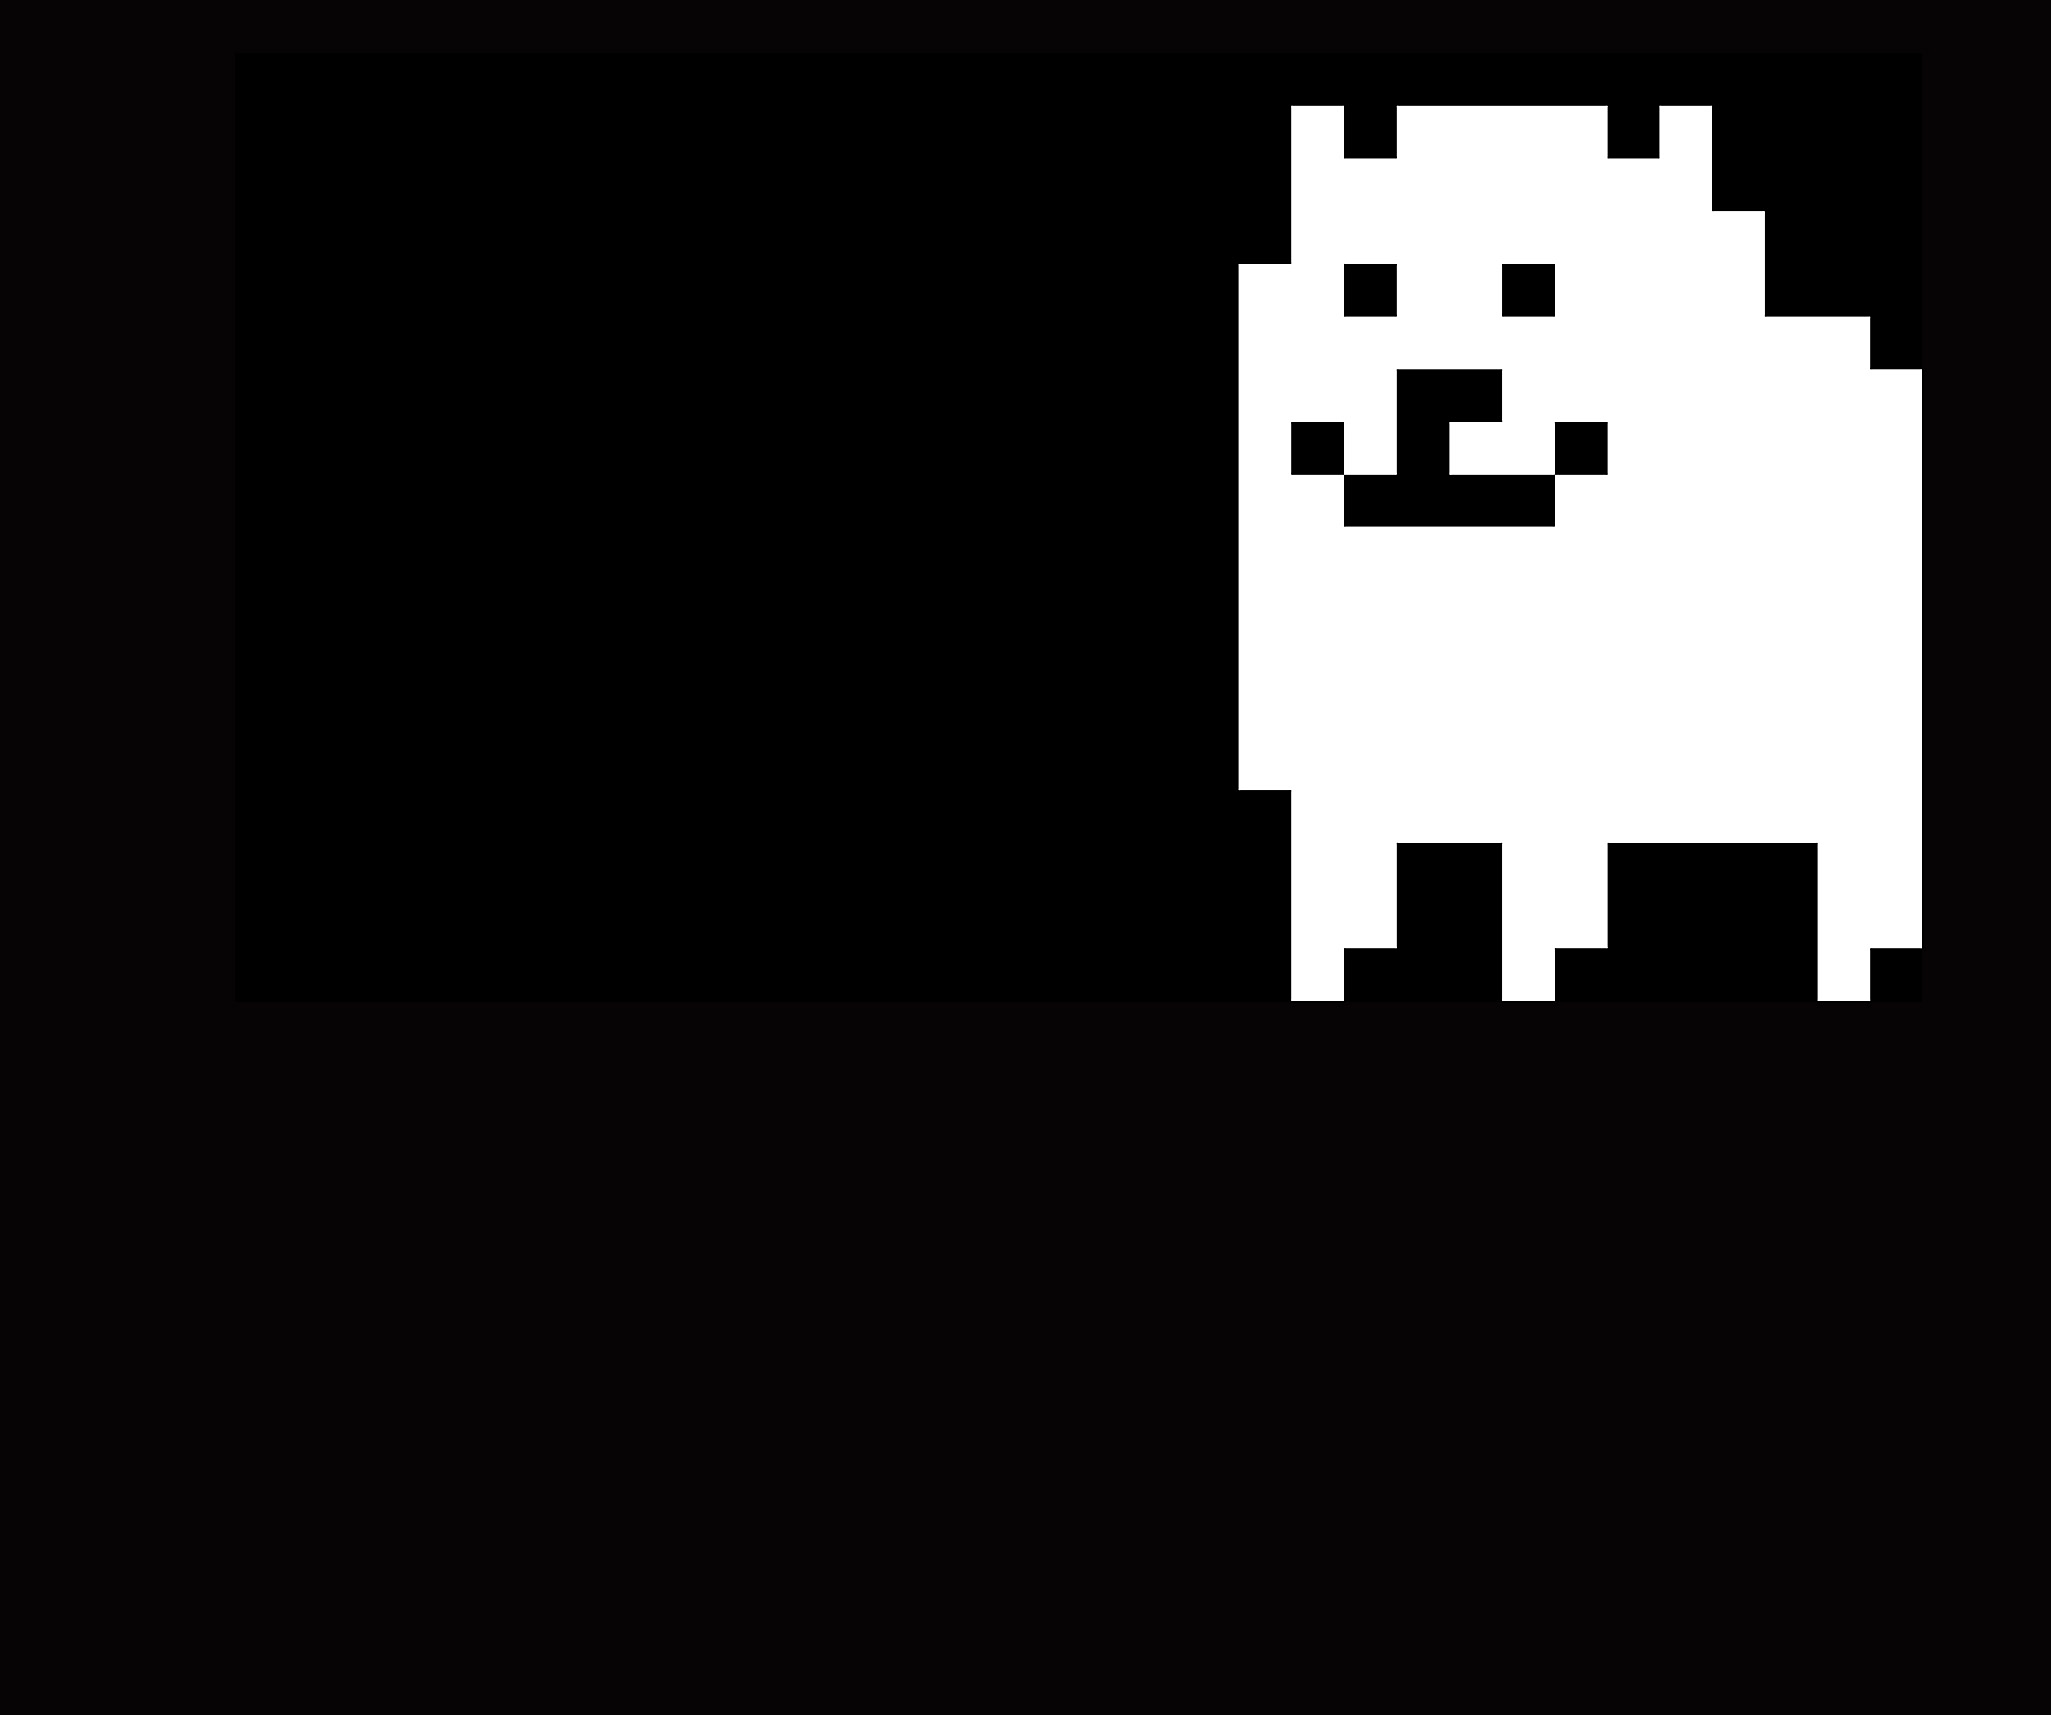 Undertale - Illustration principale montrant un chien pixelisé